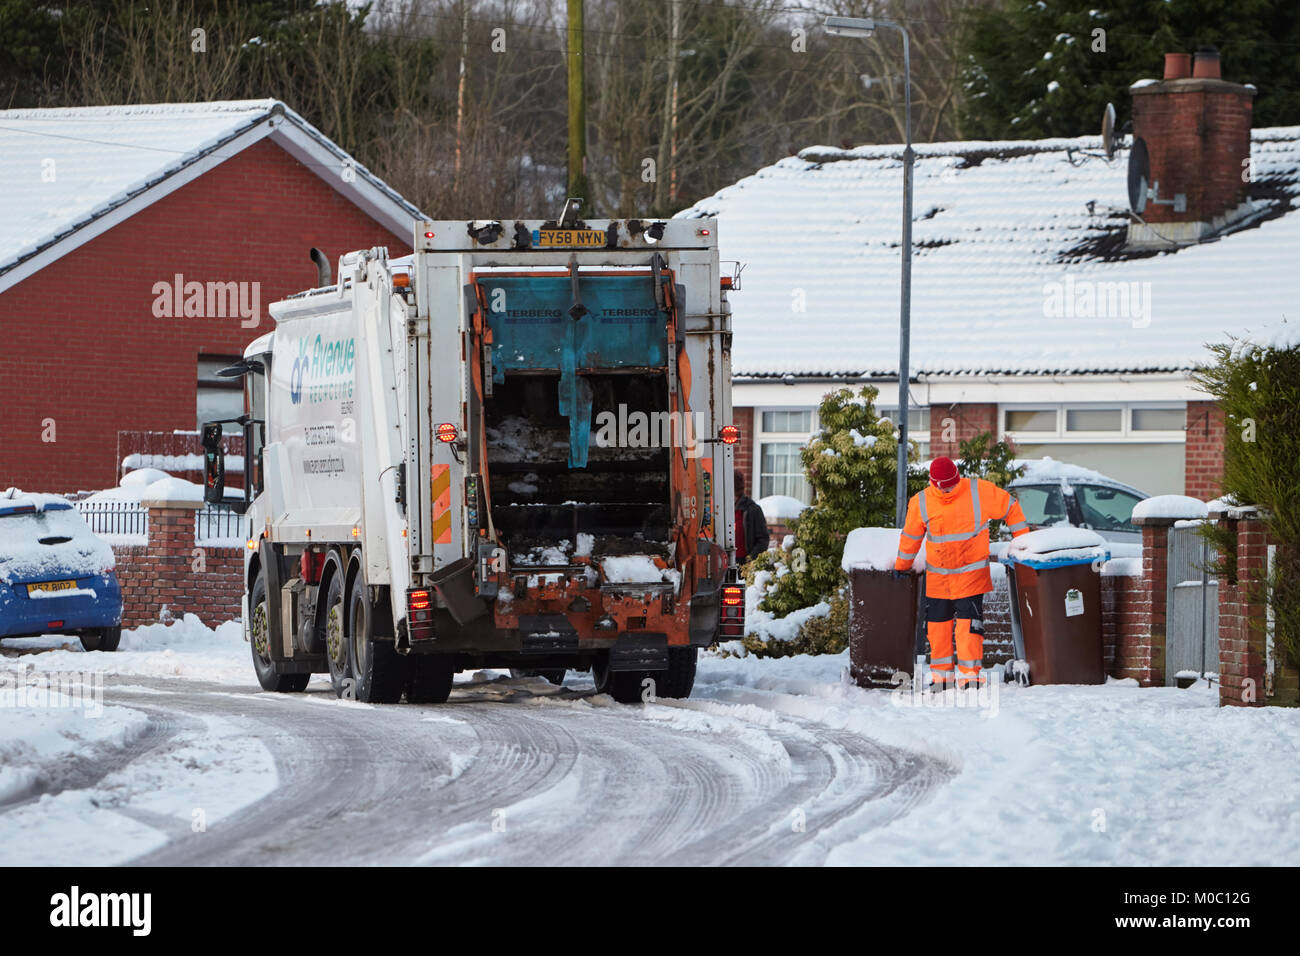 Bacs de collecte travailleur avec conduite de camion de recyclage d'ordures dans cette rue couverte de neige dans la région de Belfast en Irlande du Nord Banque D'Images